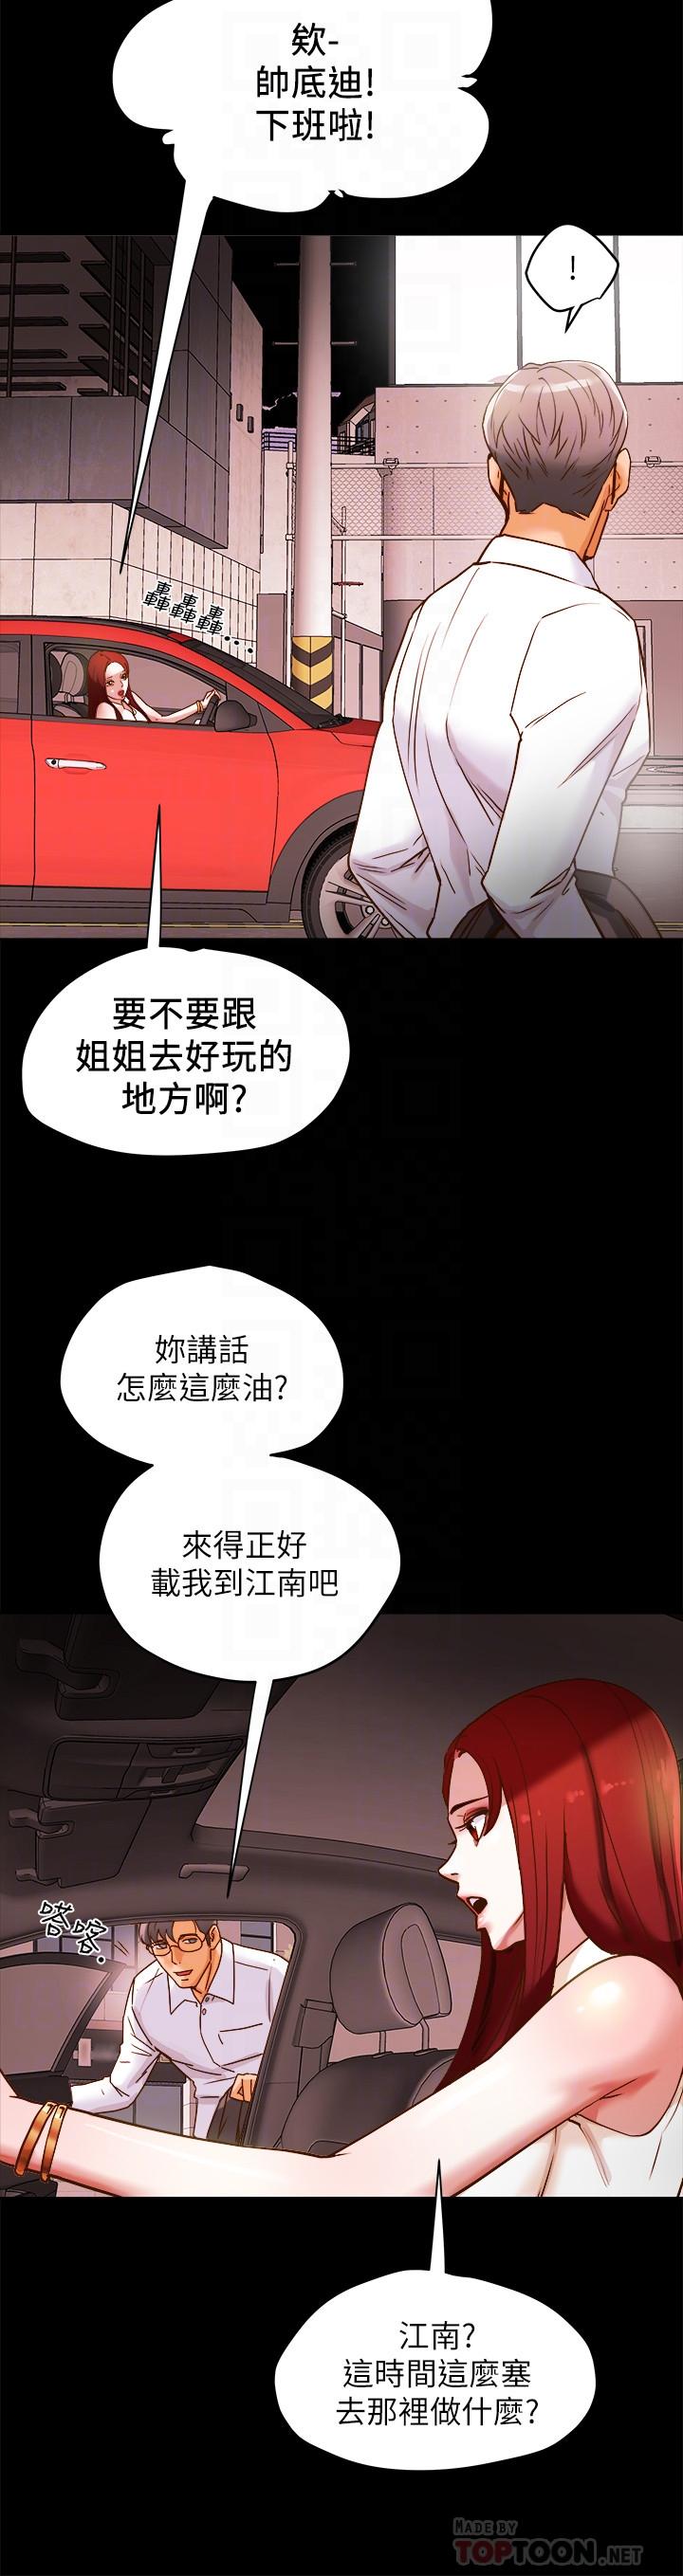 韩国污漫画 純情女攻略計劃 第5话-临停路边的刺激车震 10